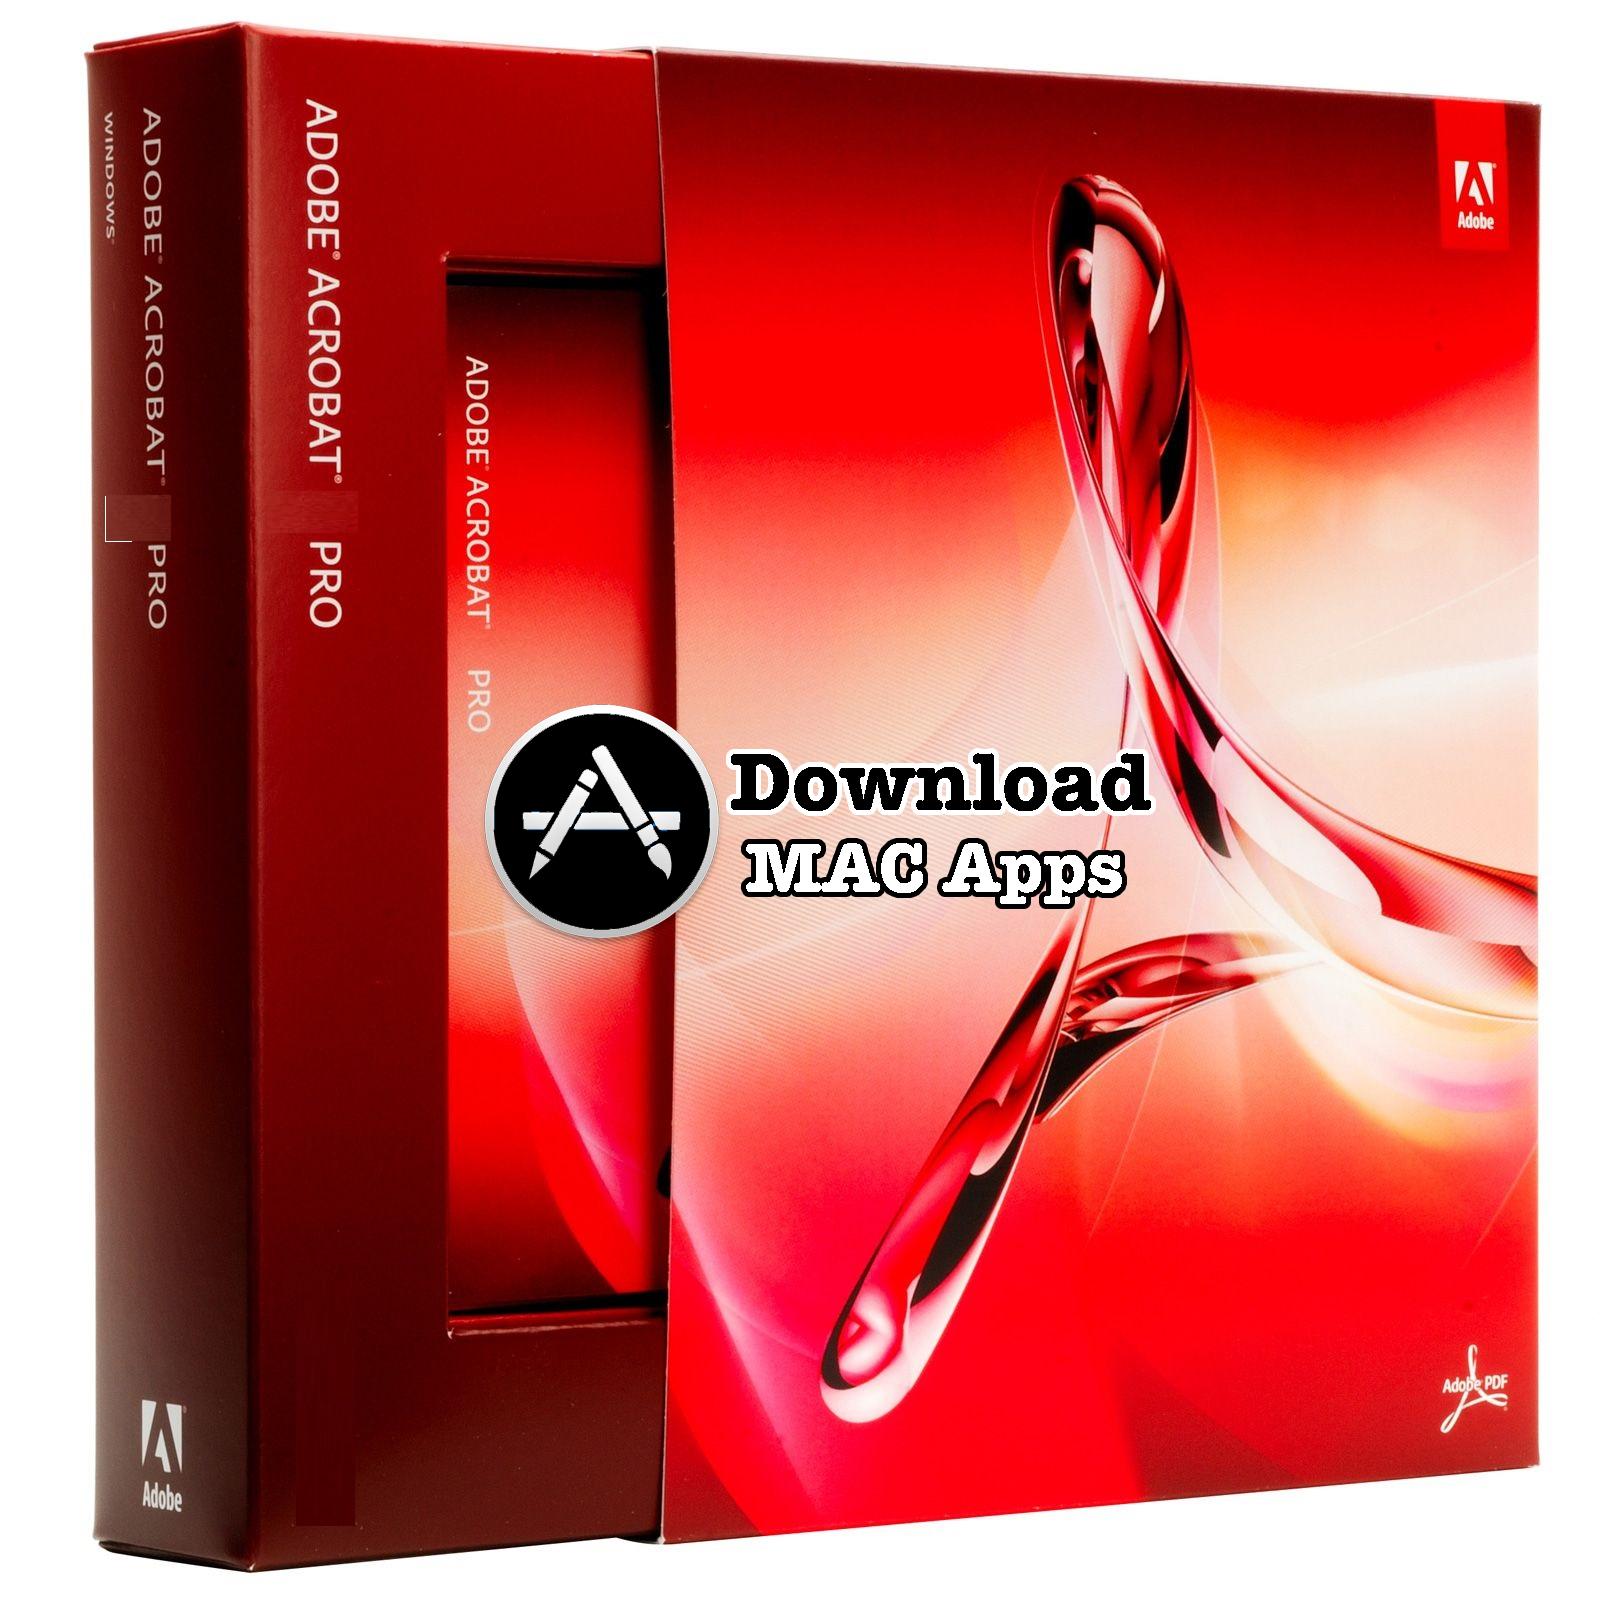 Adobe acrobat 11 pro download mac os